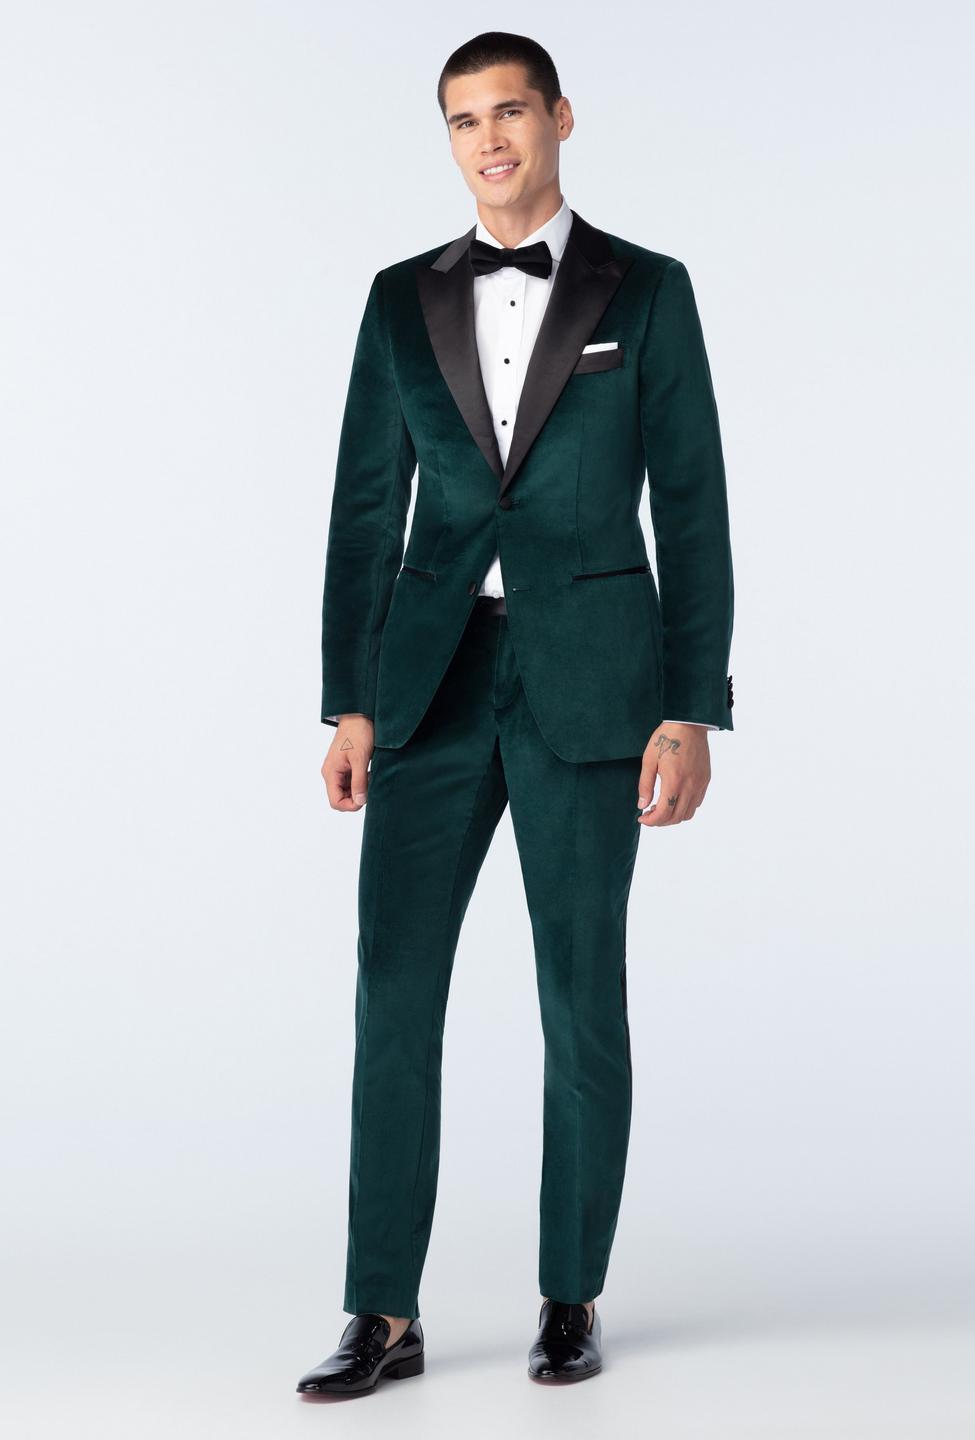 Emerald Green Tuxedo Rental